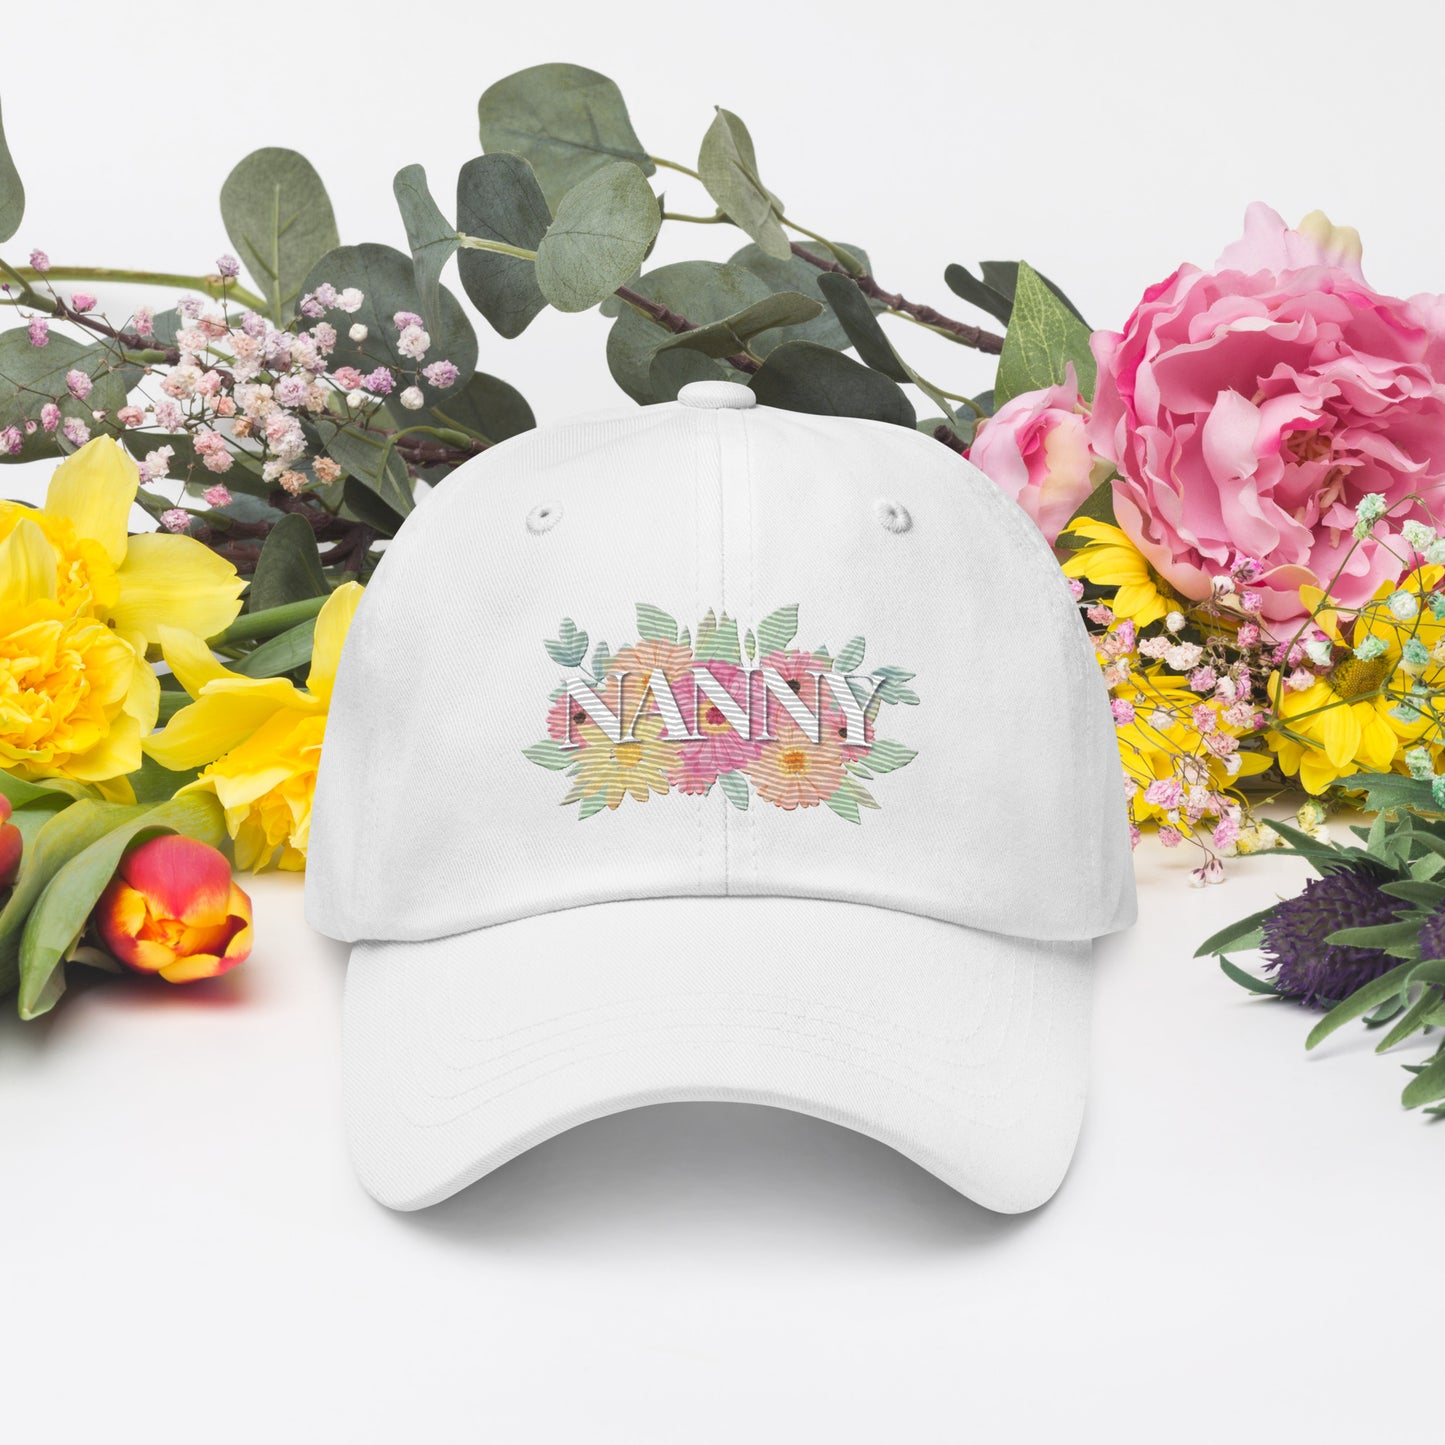 Nanny floral Hat